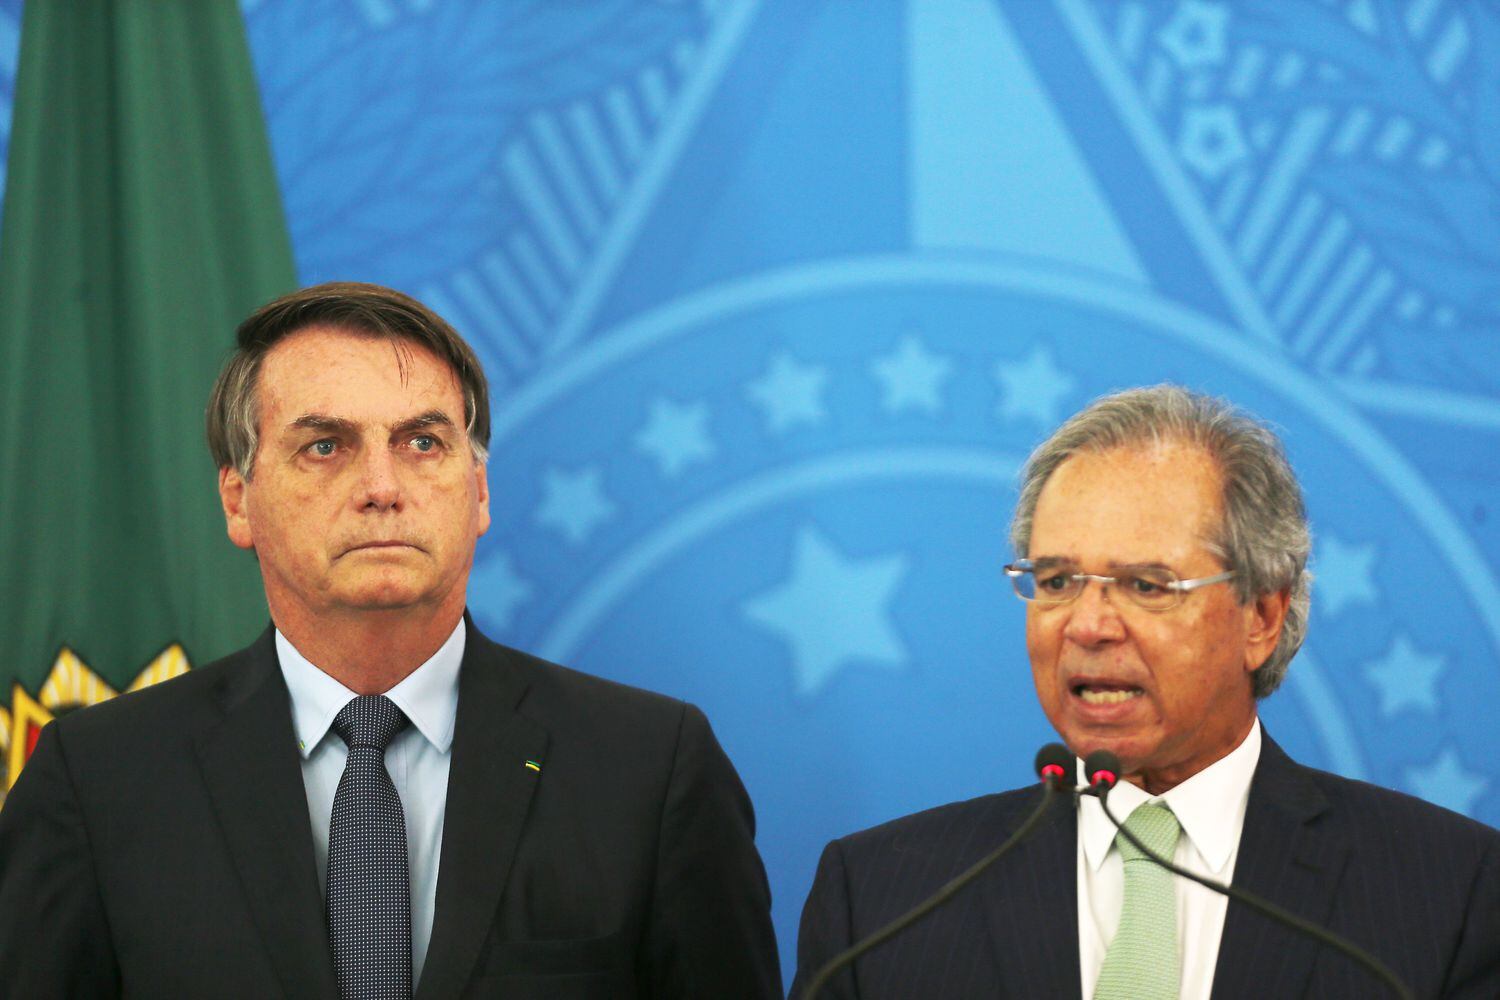 El presidente Bolsonaro (izquierda) y el ministro Guedes en Brasilia este miércoles.